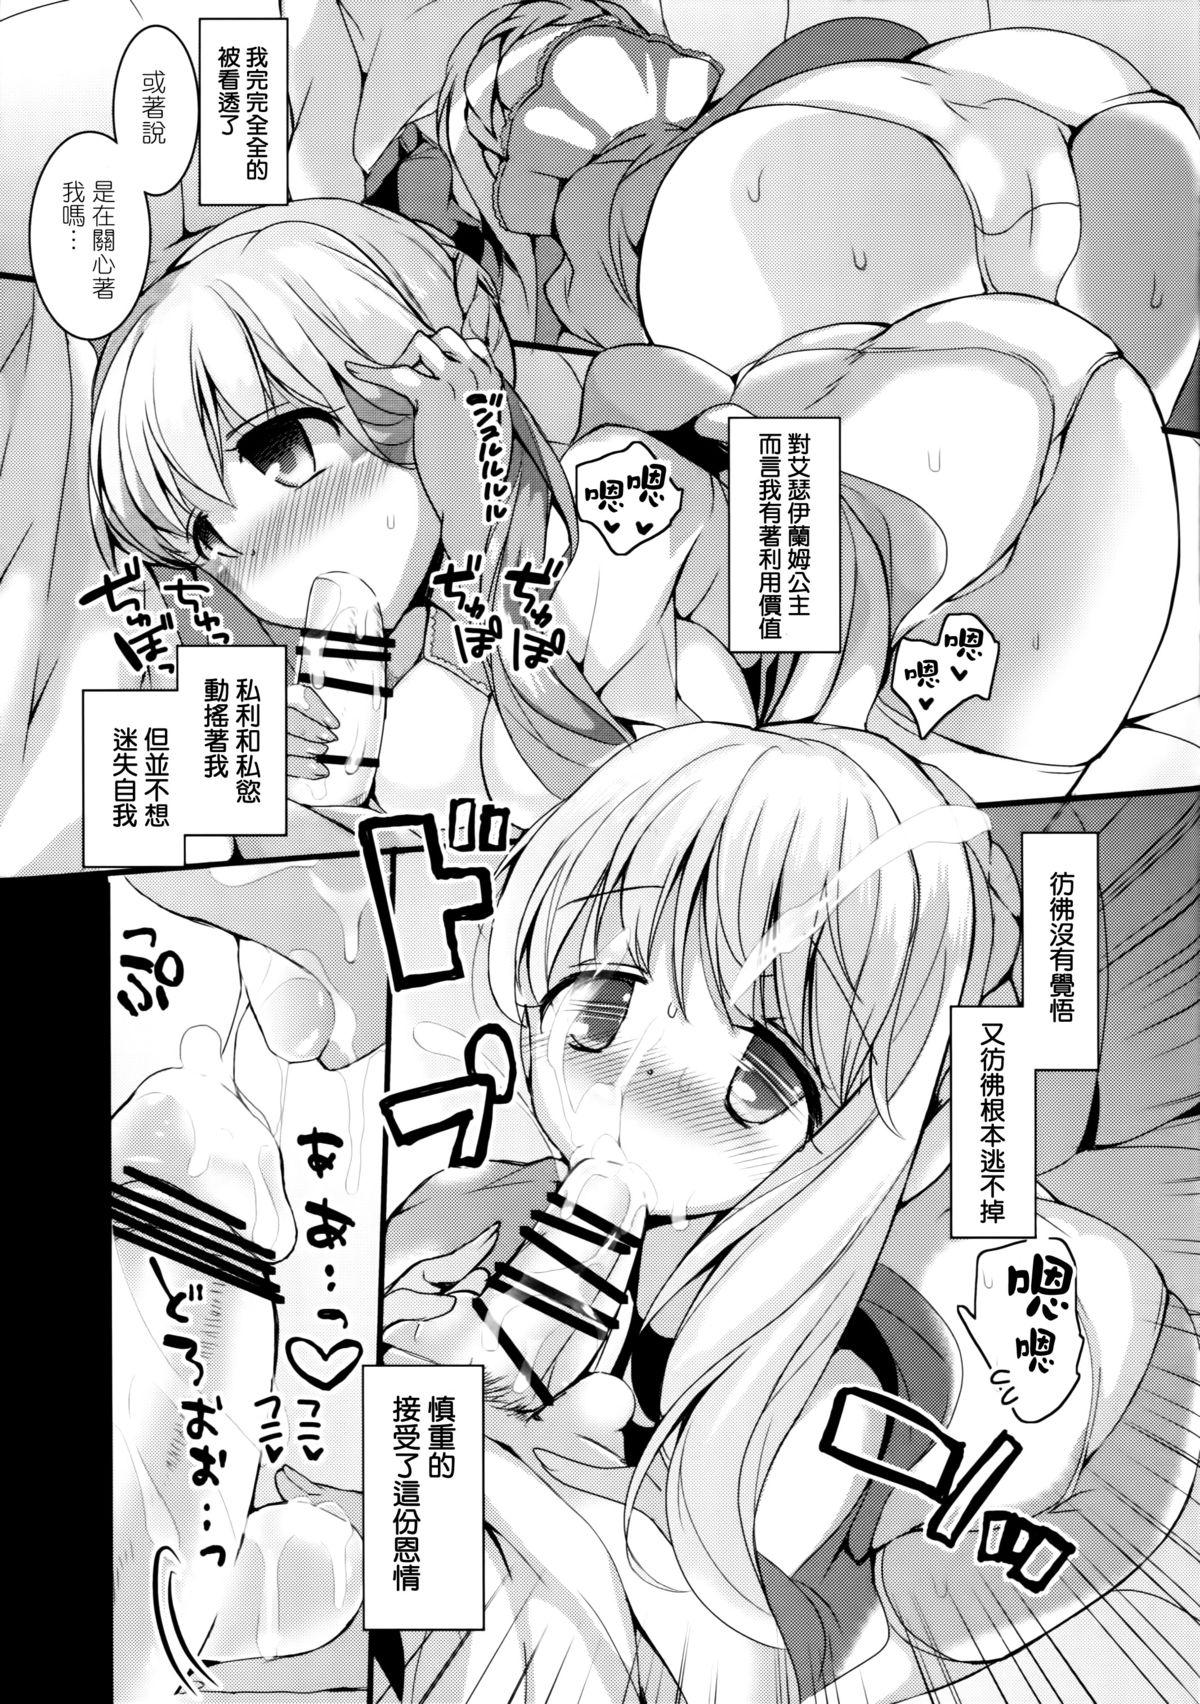 Wank Kasei Hime no Otoshikata - Aldnoah.zero Sex Party - Page 8